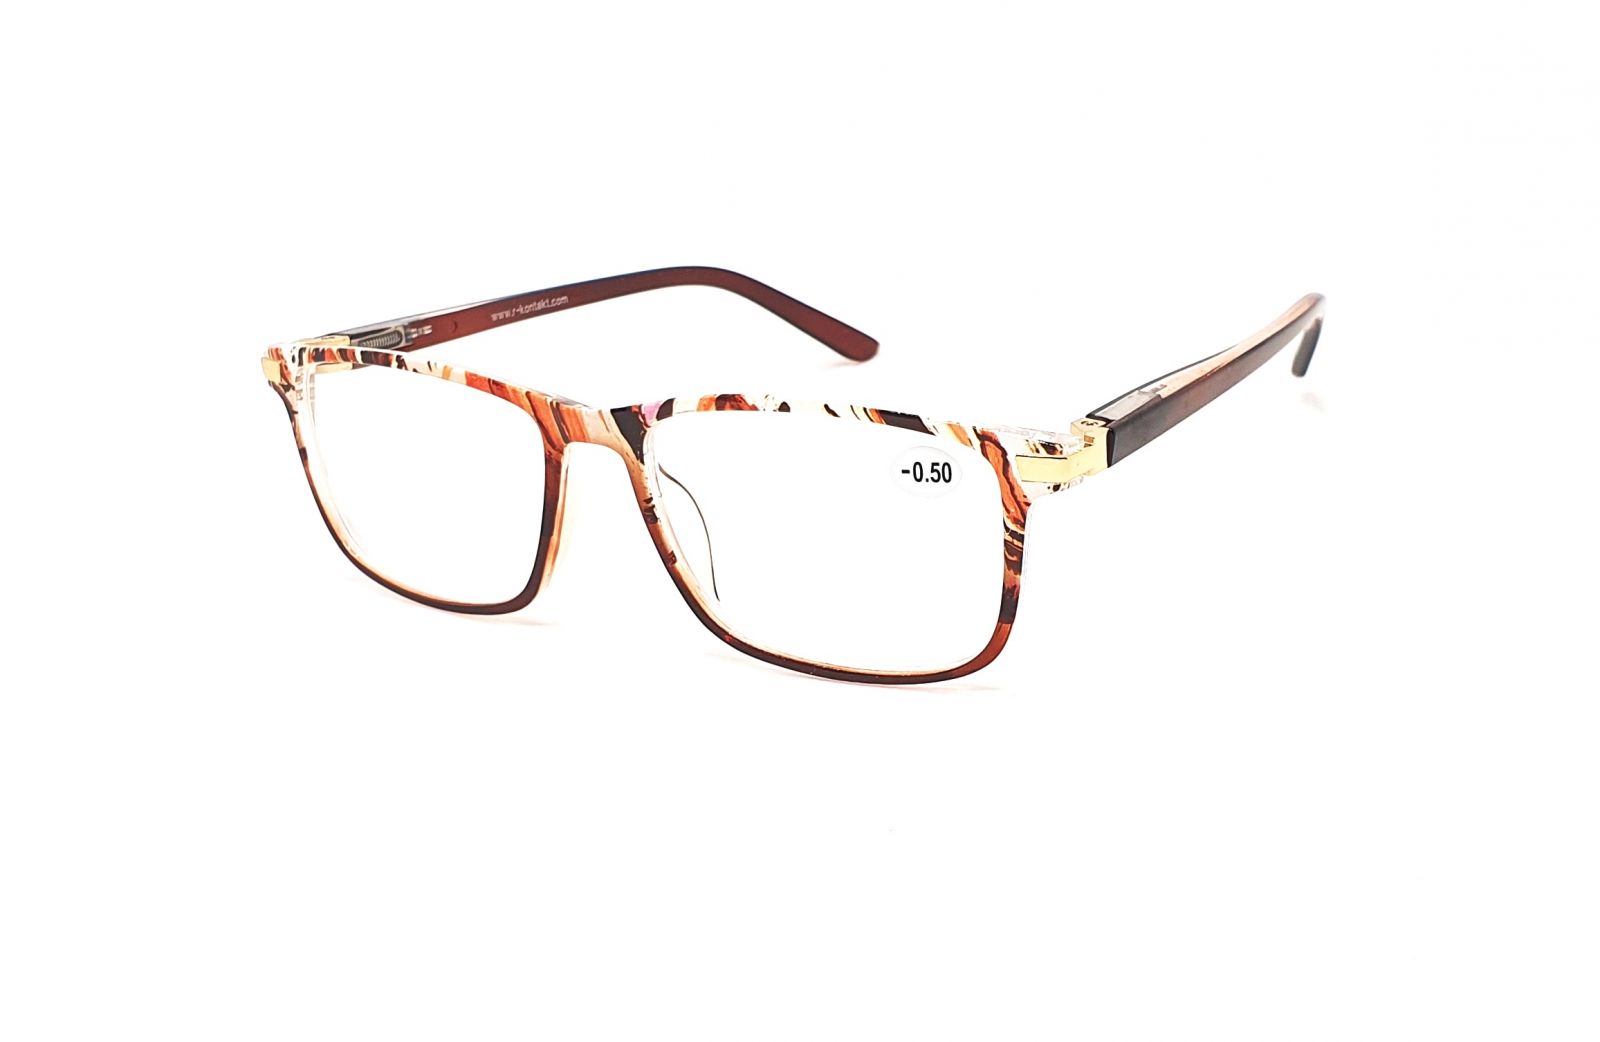 Dioptrické brýle V3075 / -0,50 brown flex